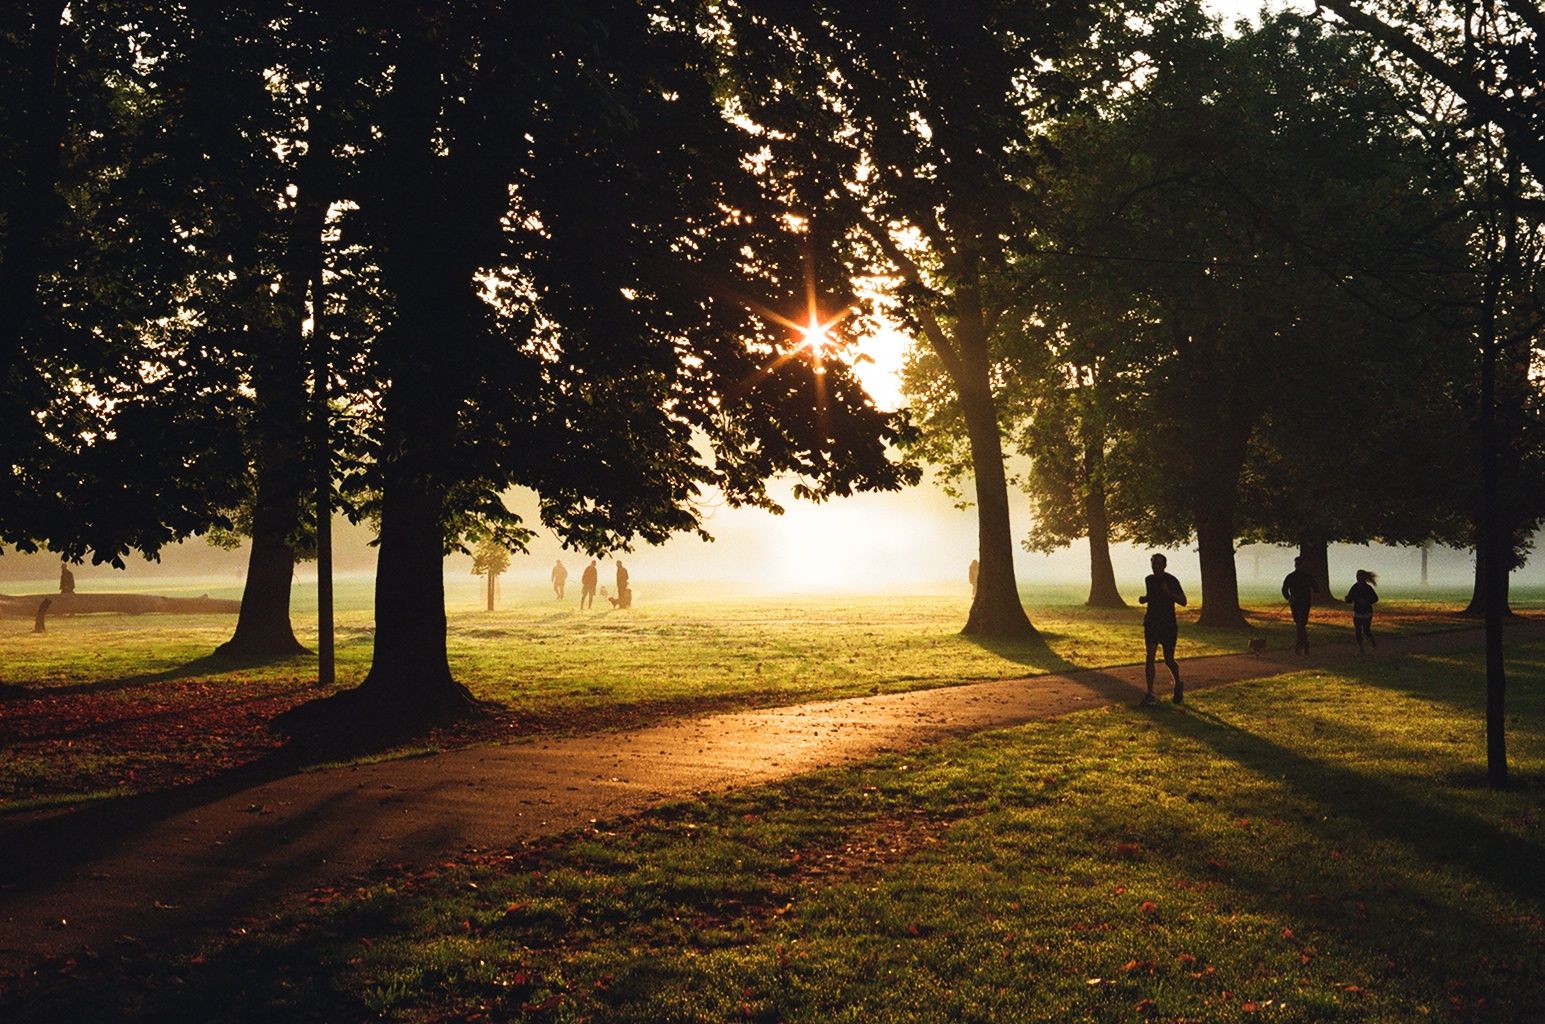 Early morning in Queen's Park, London (Kodak Ultramax 400)